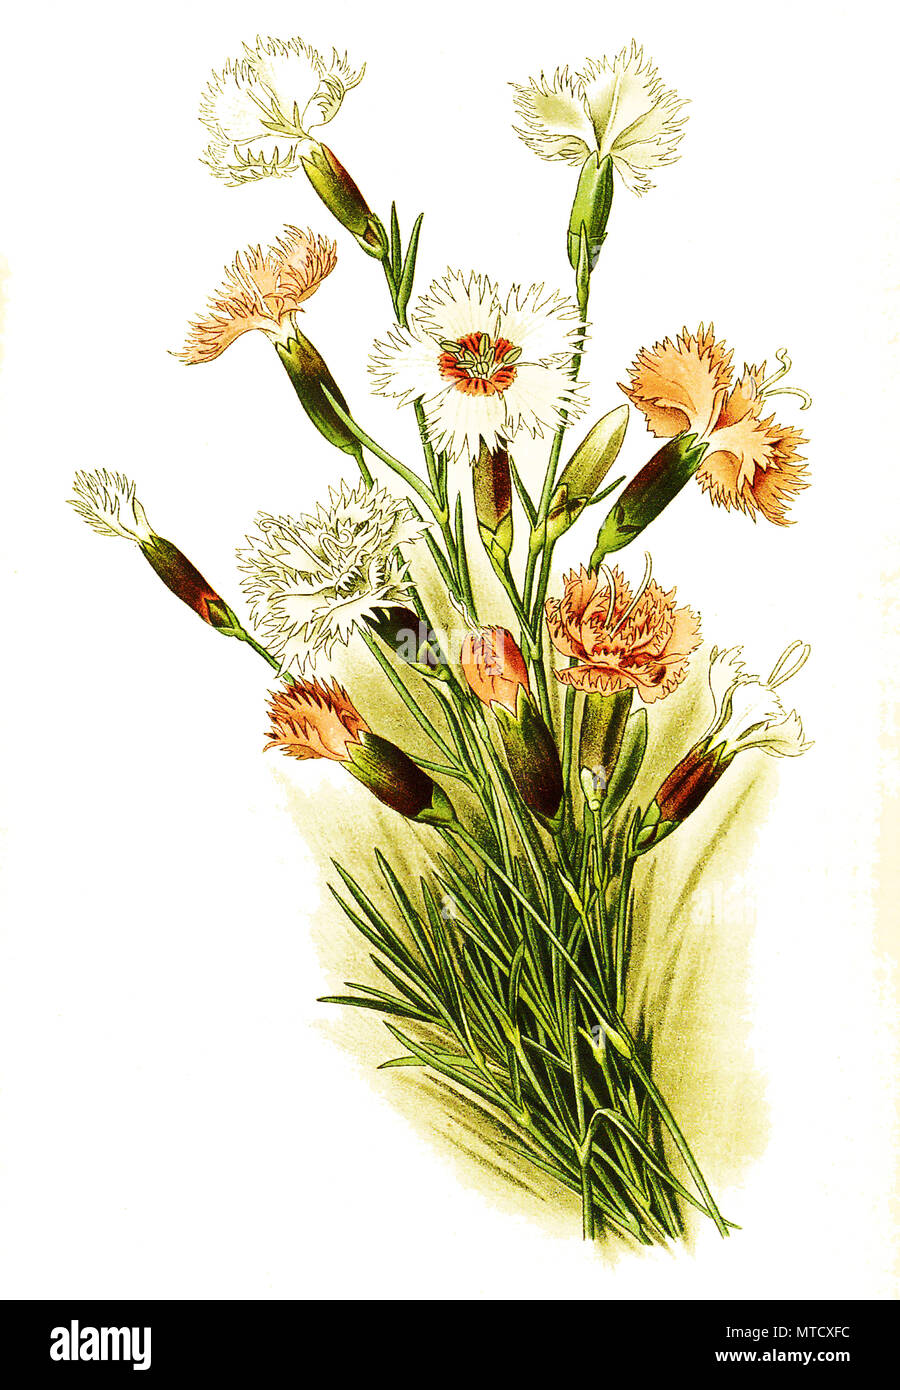 Dianthus plumarius, Rosa, Pink, Rosa, oder wild pink. Feder-Nelke, digital verbesserte Reproduktion von Drucken des 19. Jahrhunderts Stockfoto